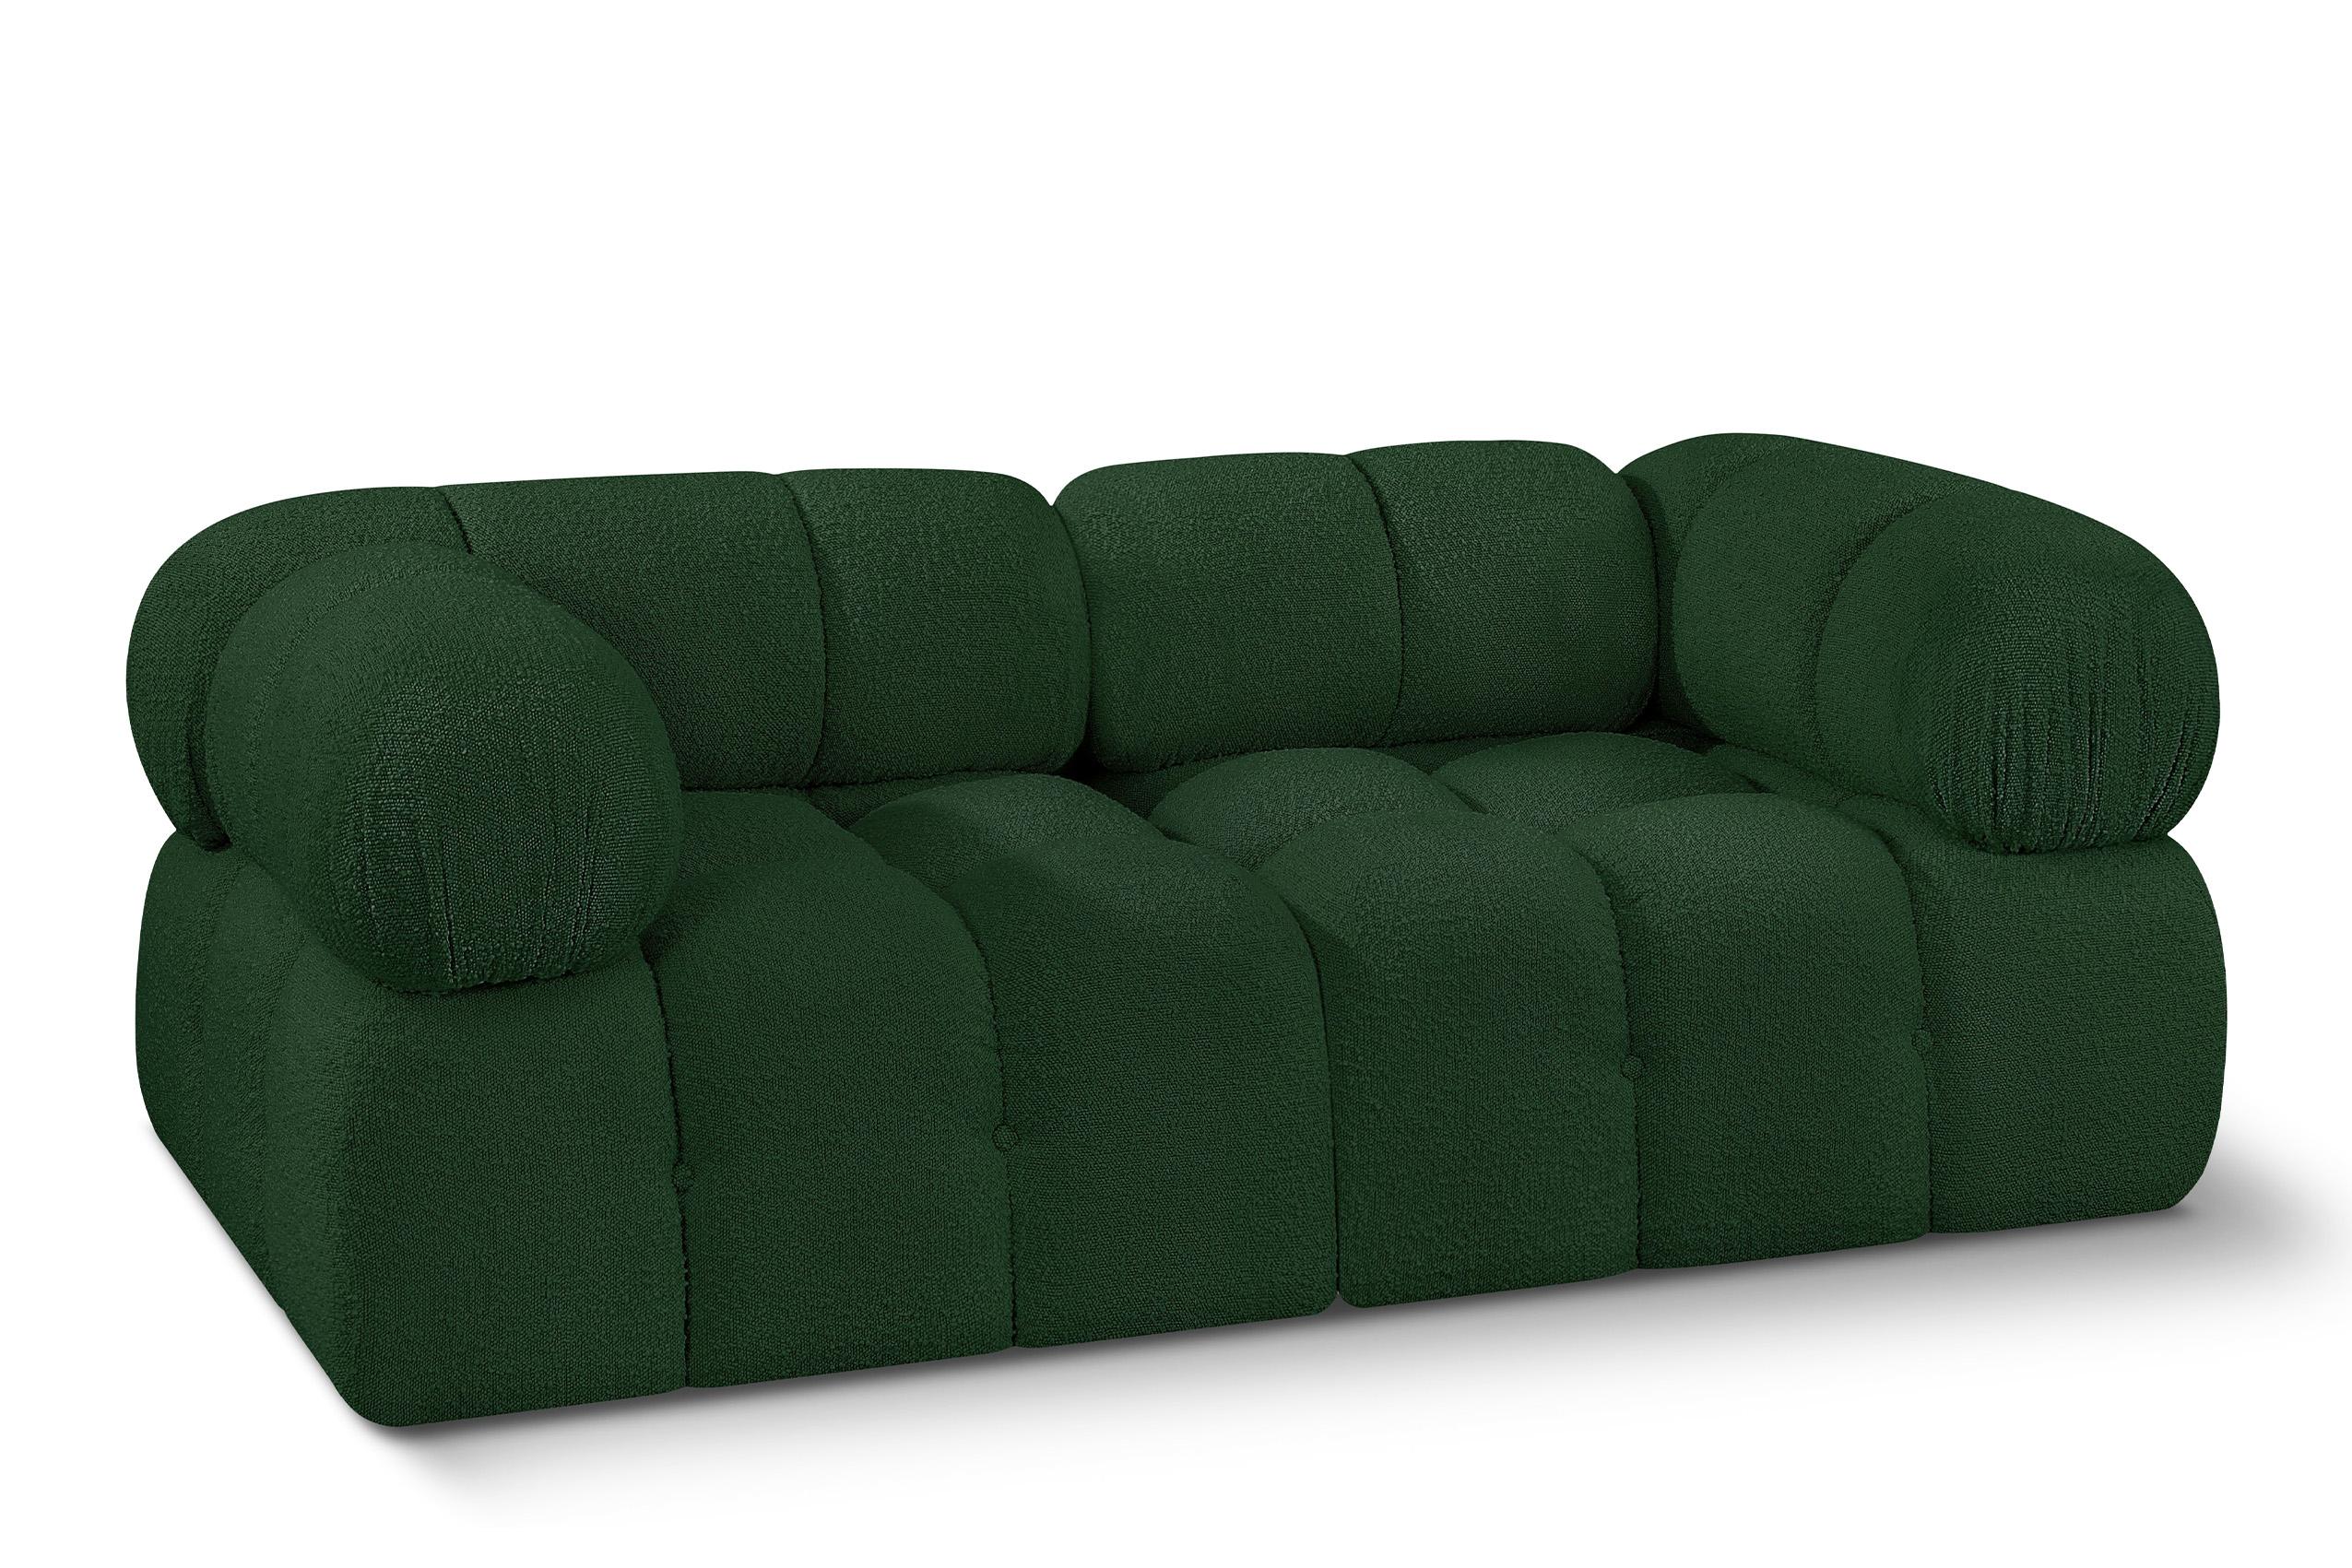 Contemporary, Modern Modular Sofa AMES 611Green-S68A 611Green-S68A in Green 